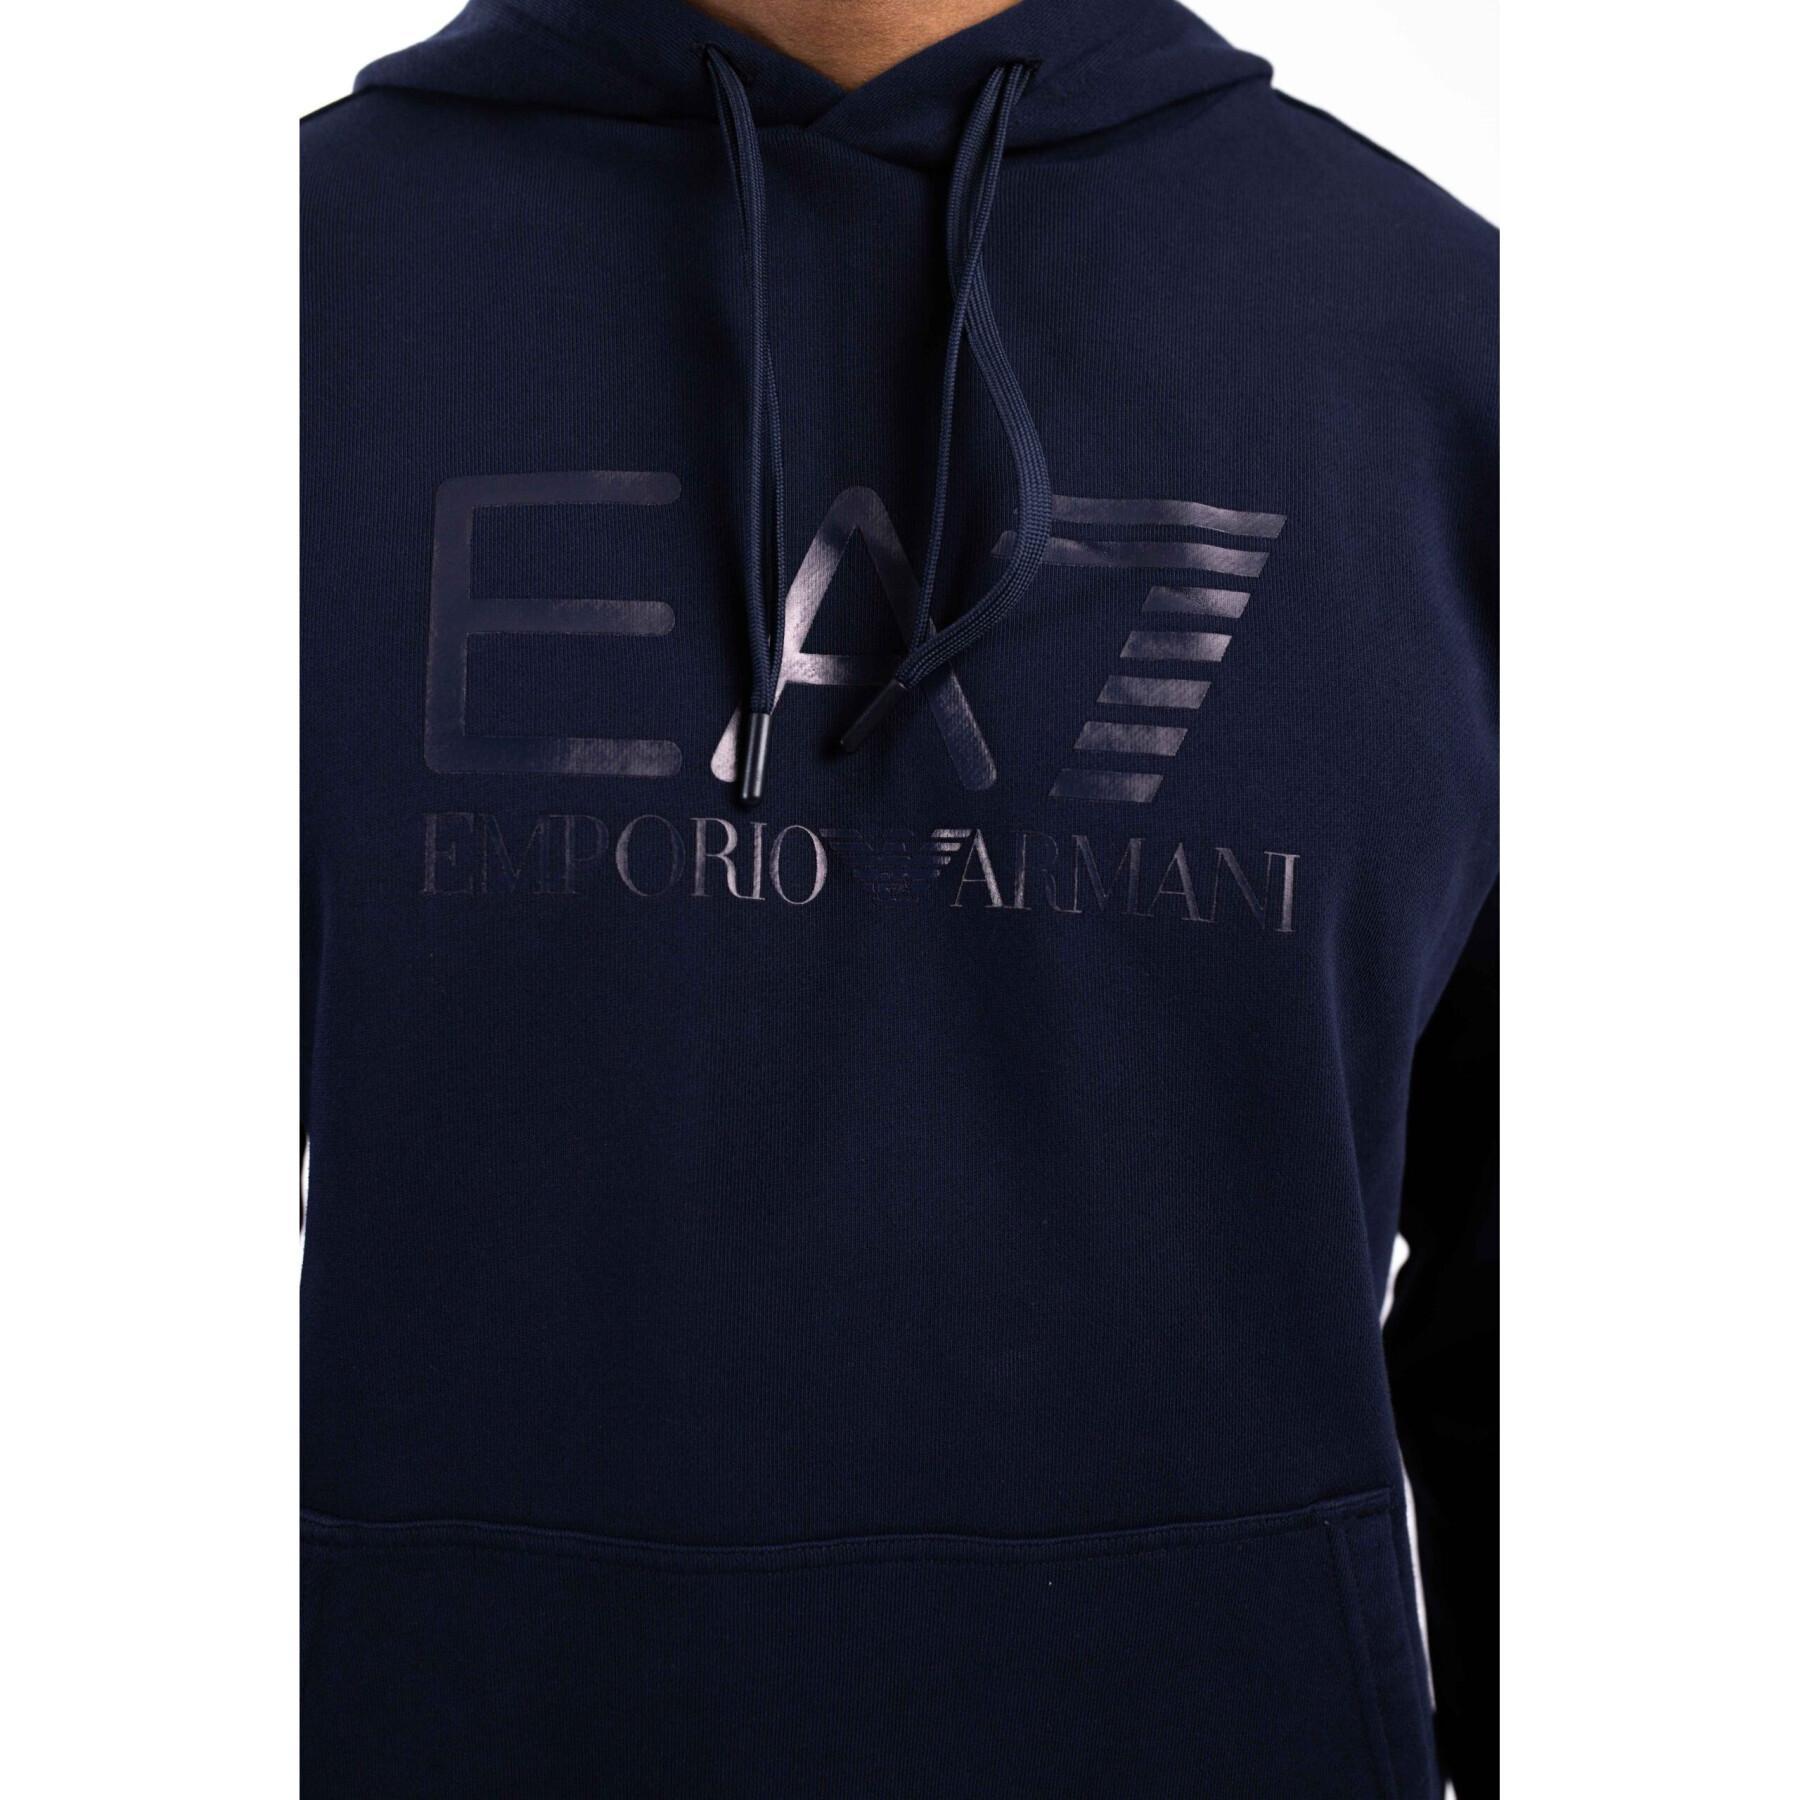 Sweatshirt EA7 Emporio Armani Felpa